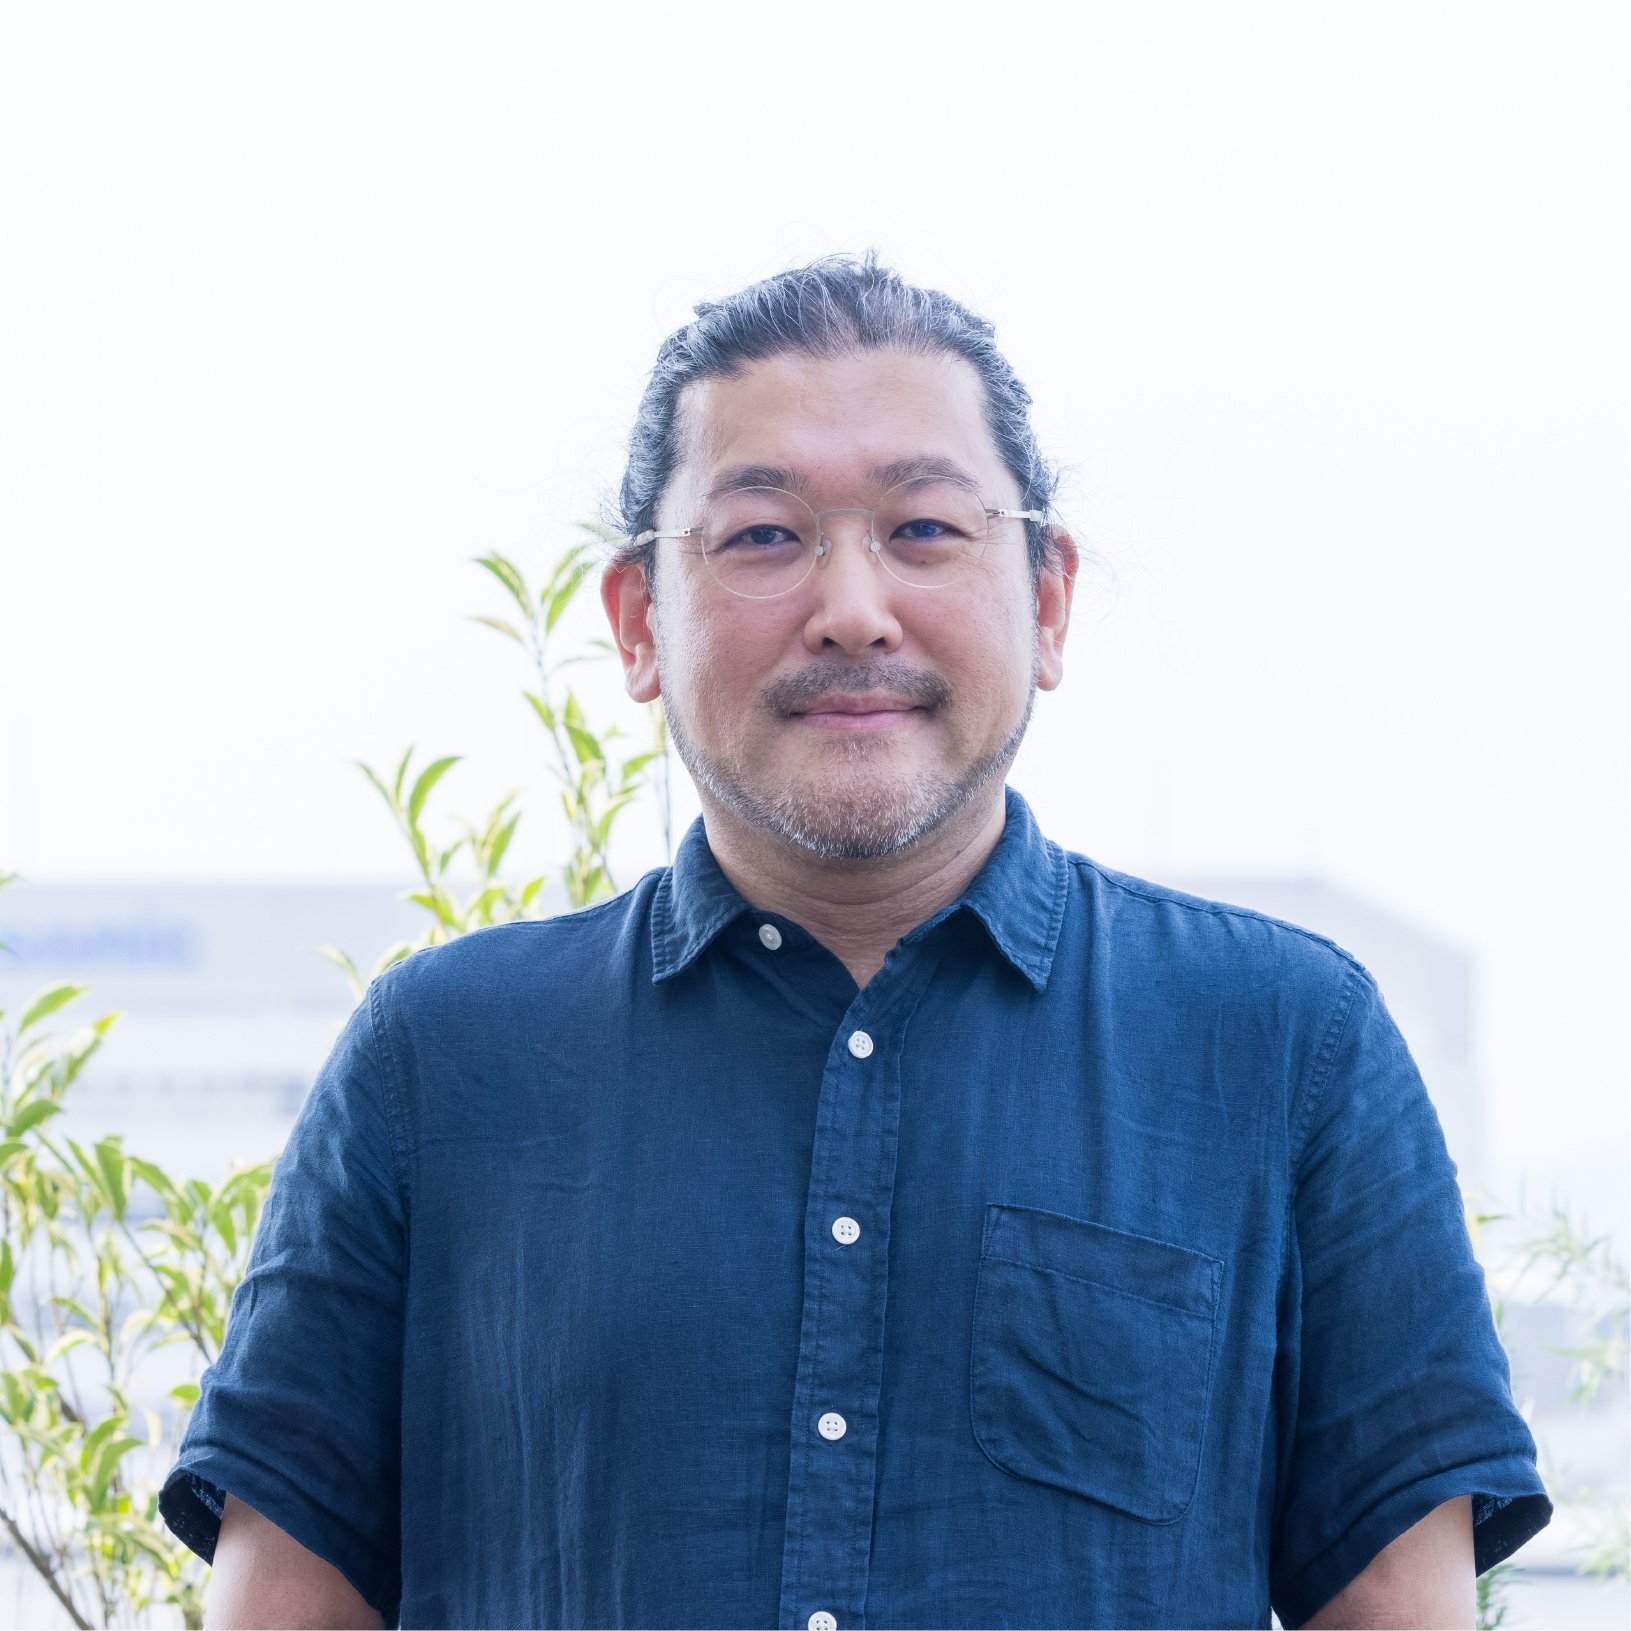 松田 淳一氏のプロフィール写真 | Make New Magazine「未来の定番」をつくるために、パナソニックのリアルな姿を伝えるメディア